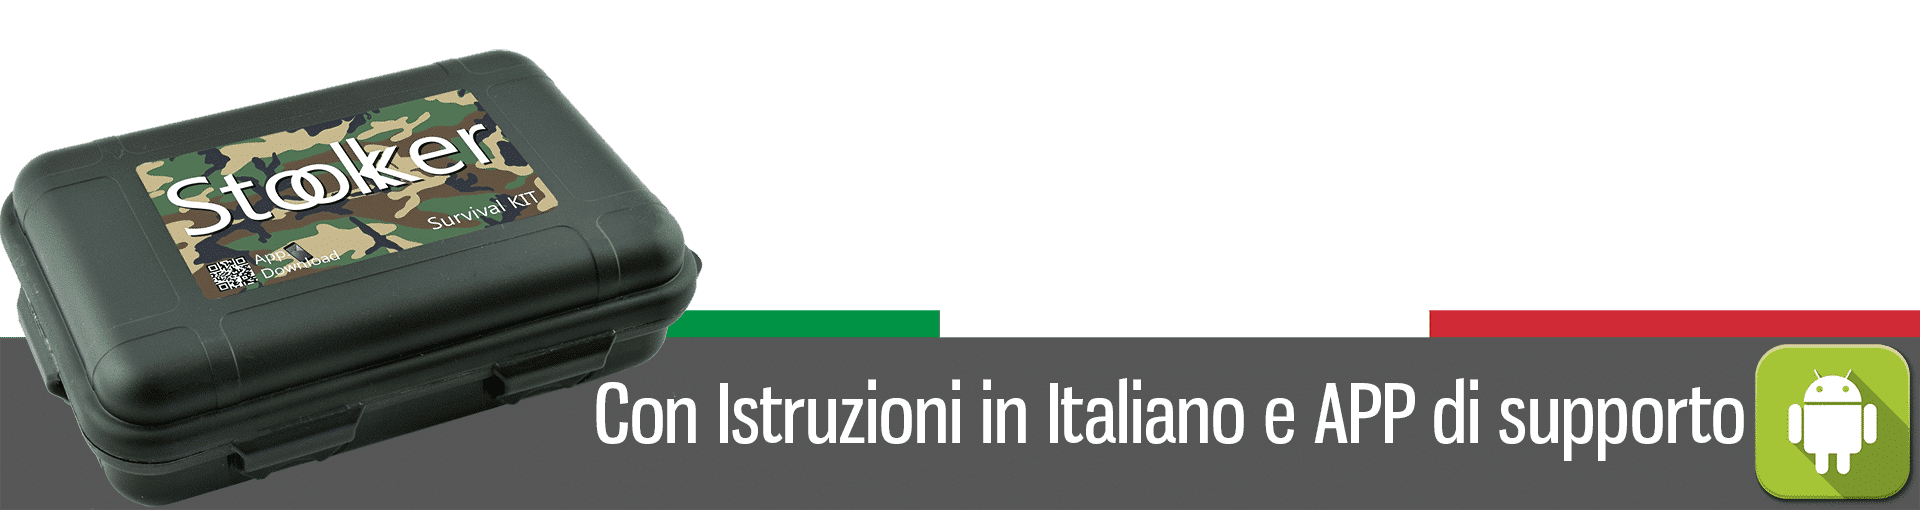 Con istruzioni in Italiano e App di supporto